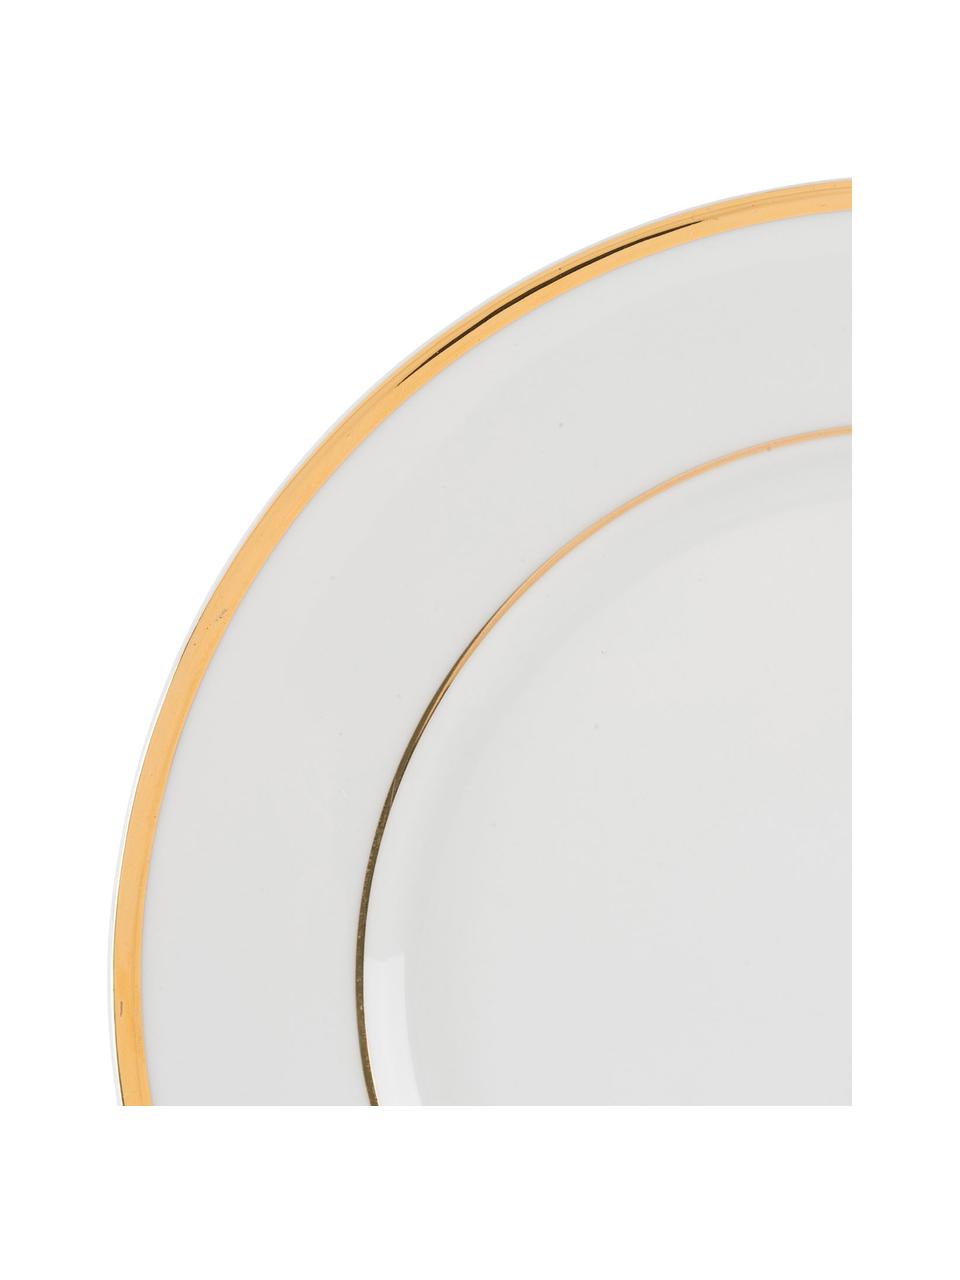 Porseleinen dinerbord Ginger met goudkleurige rand, 6 stuks, Porselein, Wit, goudkleurig, Ø 27 cm